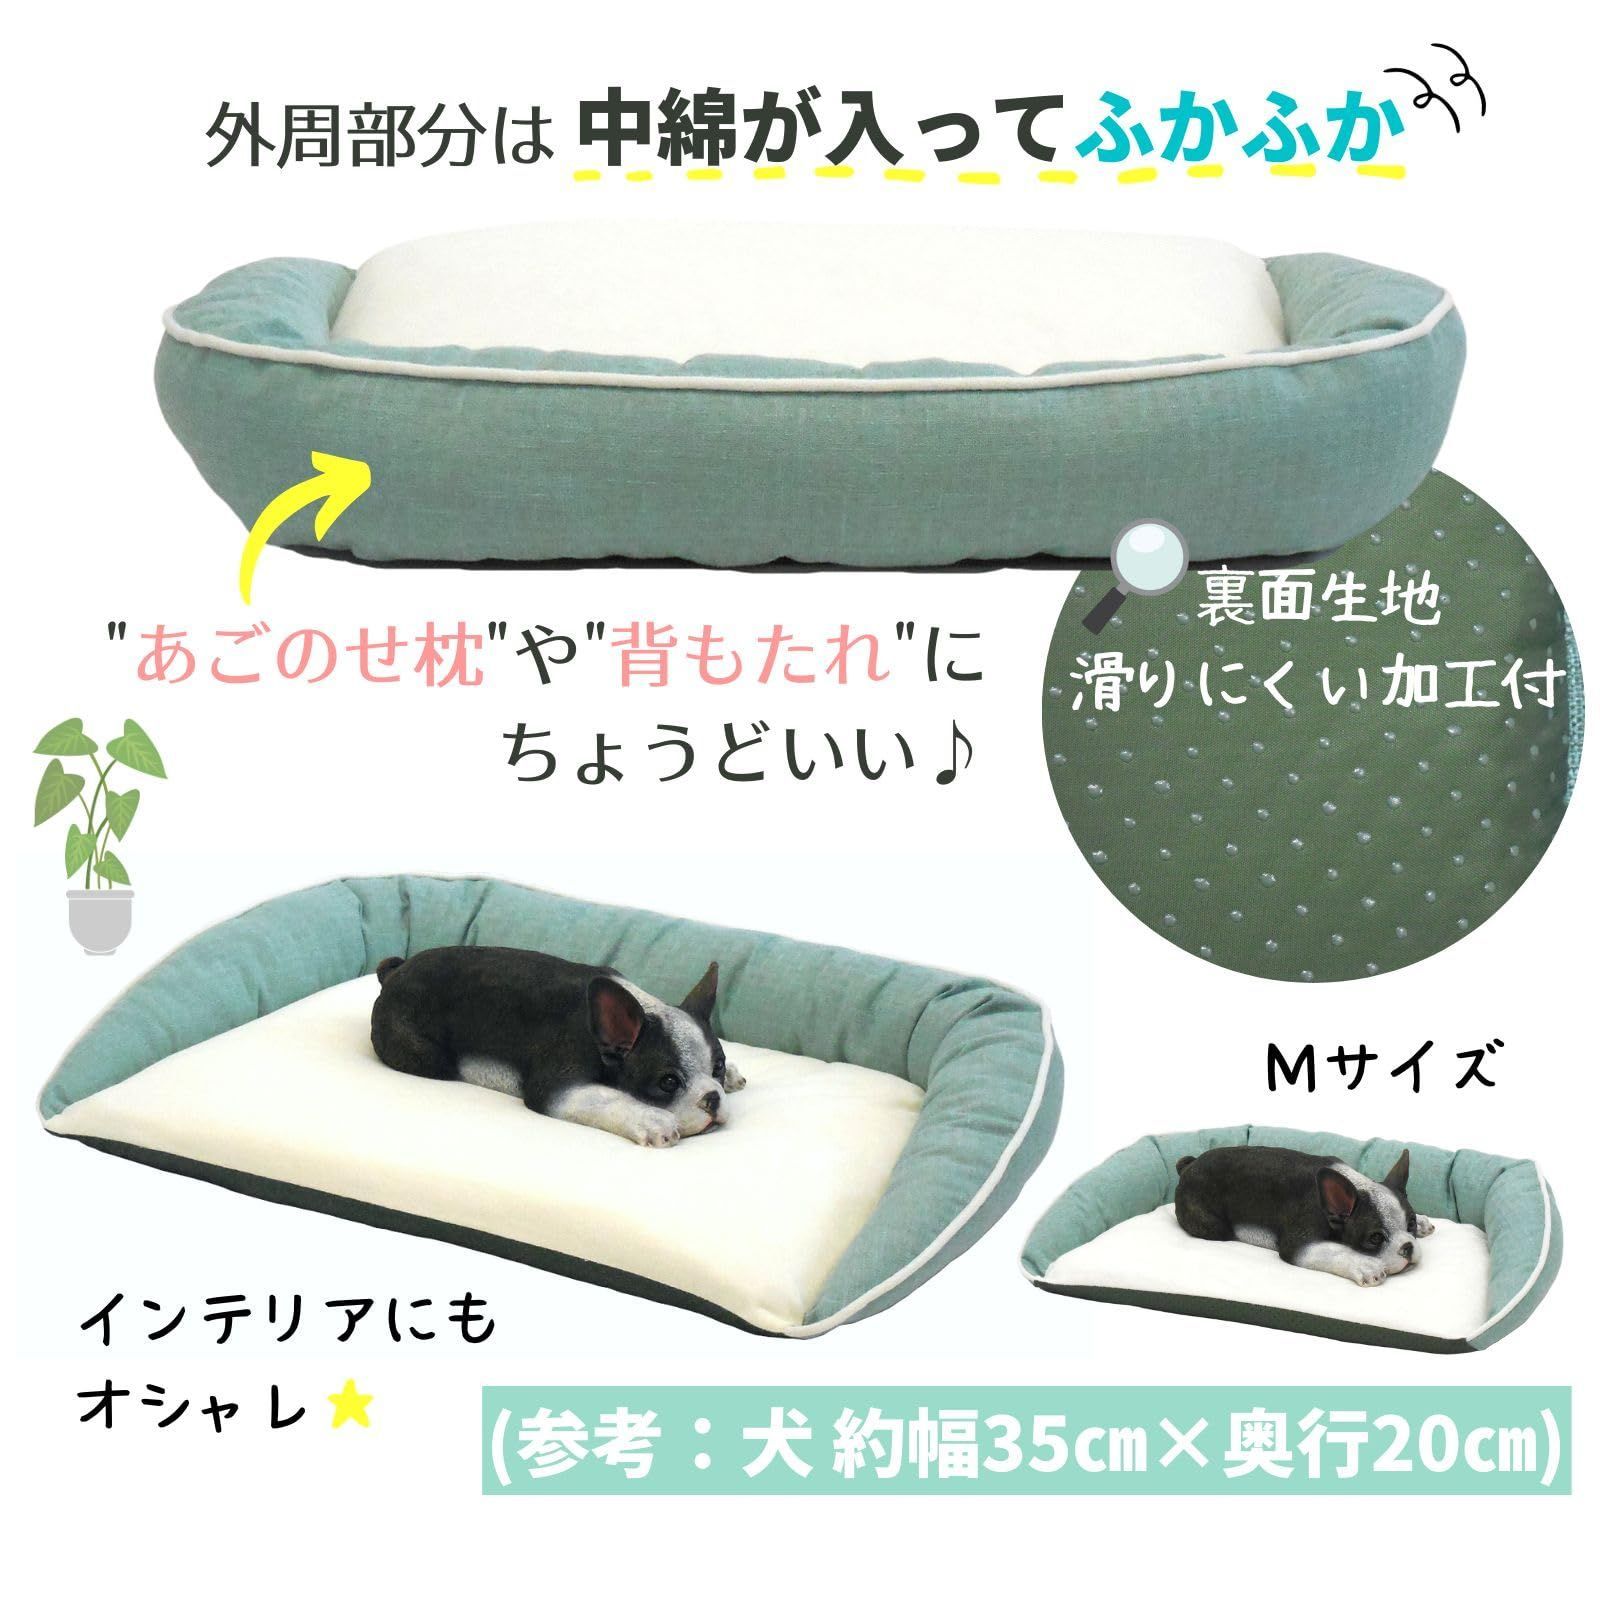 新品未使用 犬 猫 ベッド STYRIA サマーツイード パイル ペットベッド ...